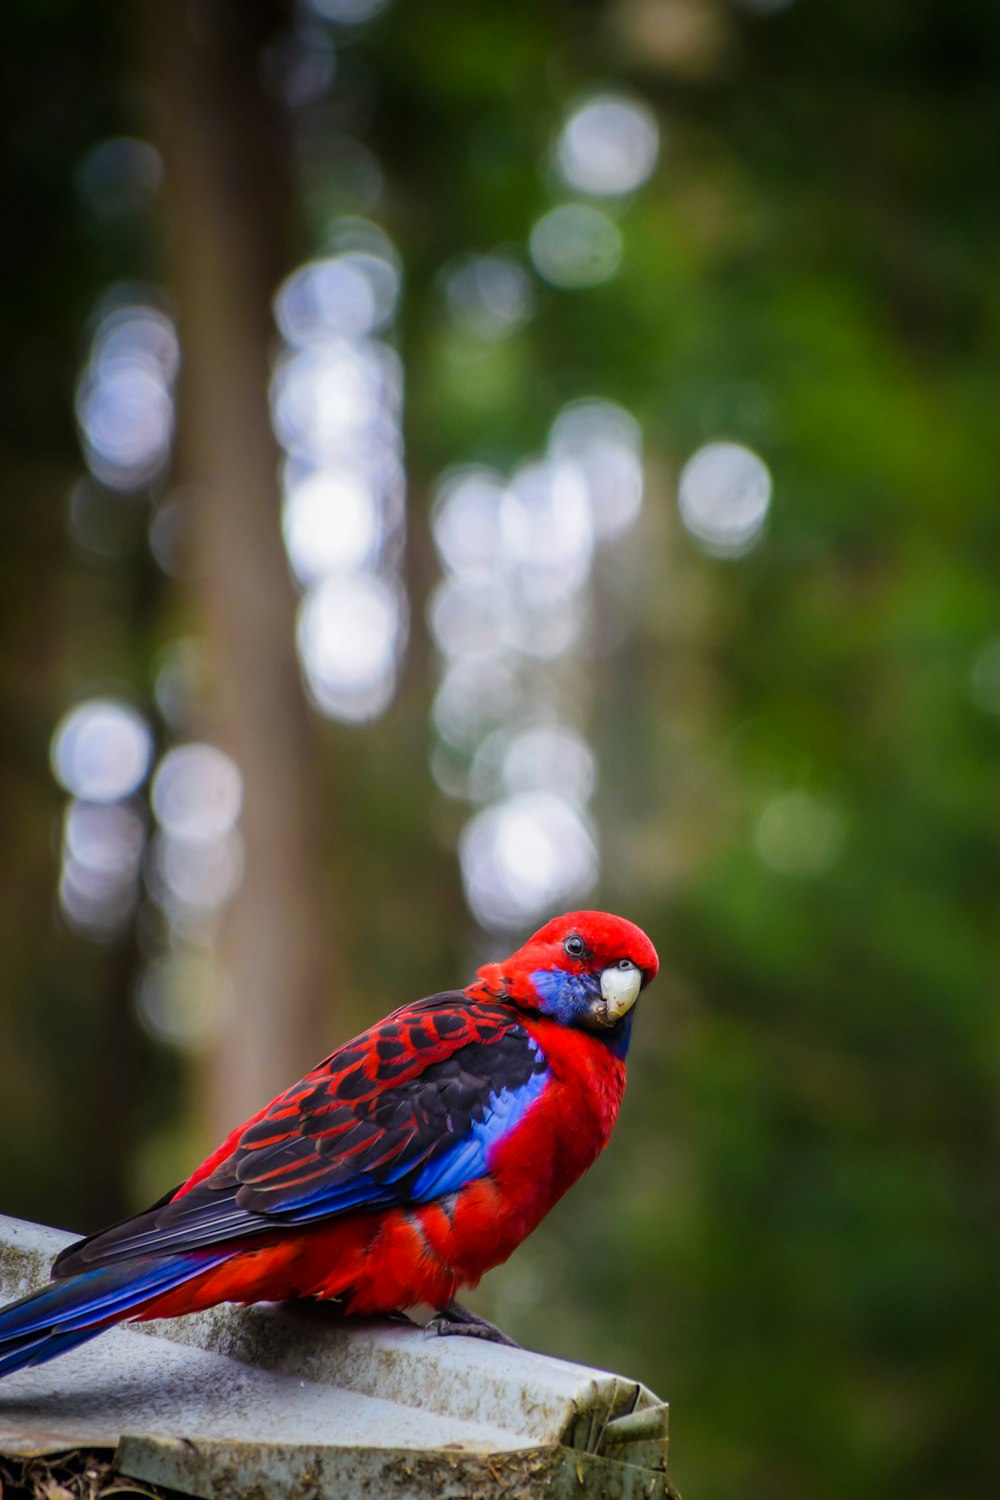 red and blue bird in tilt shift lens